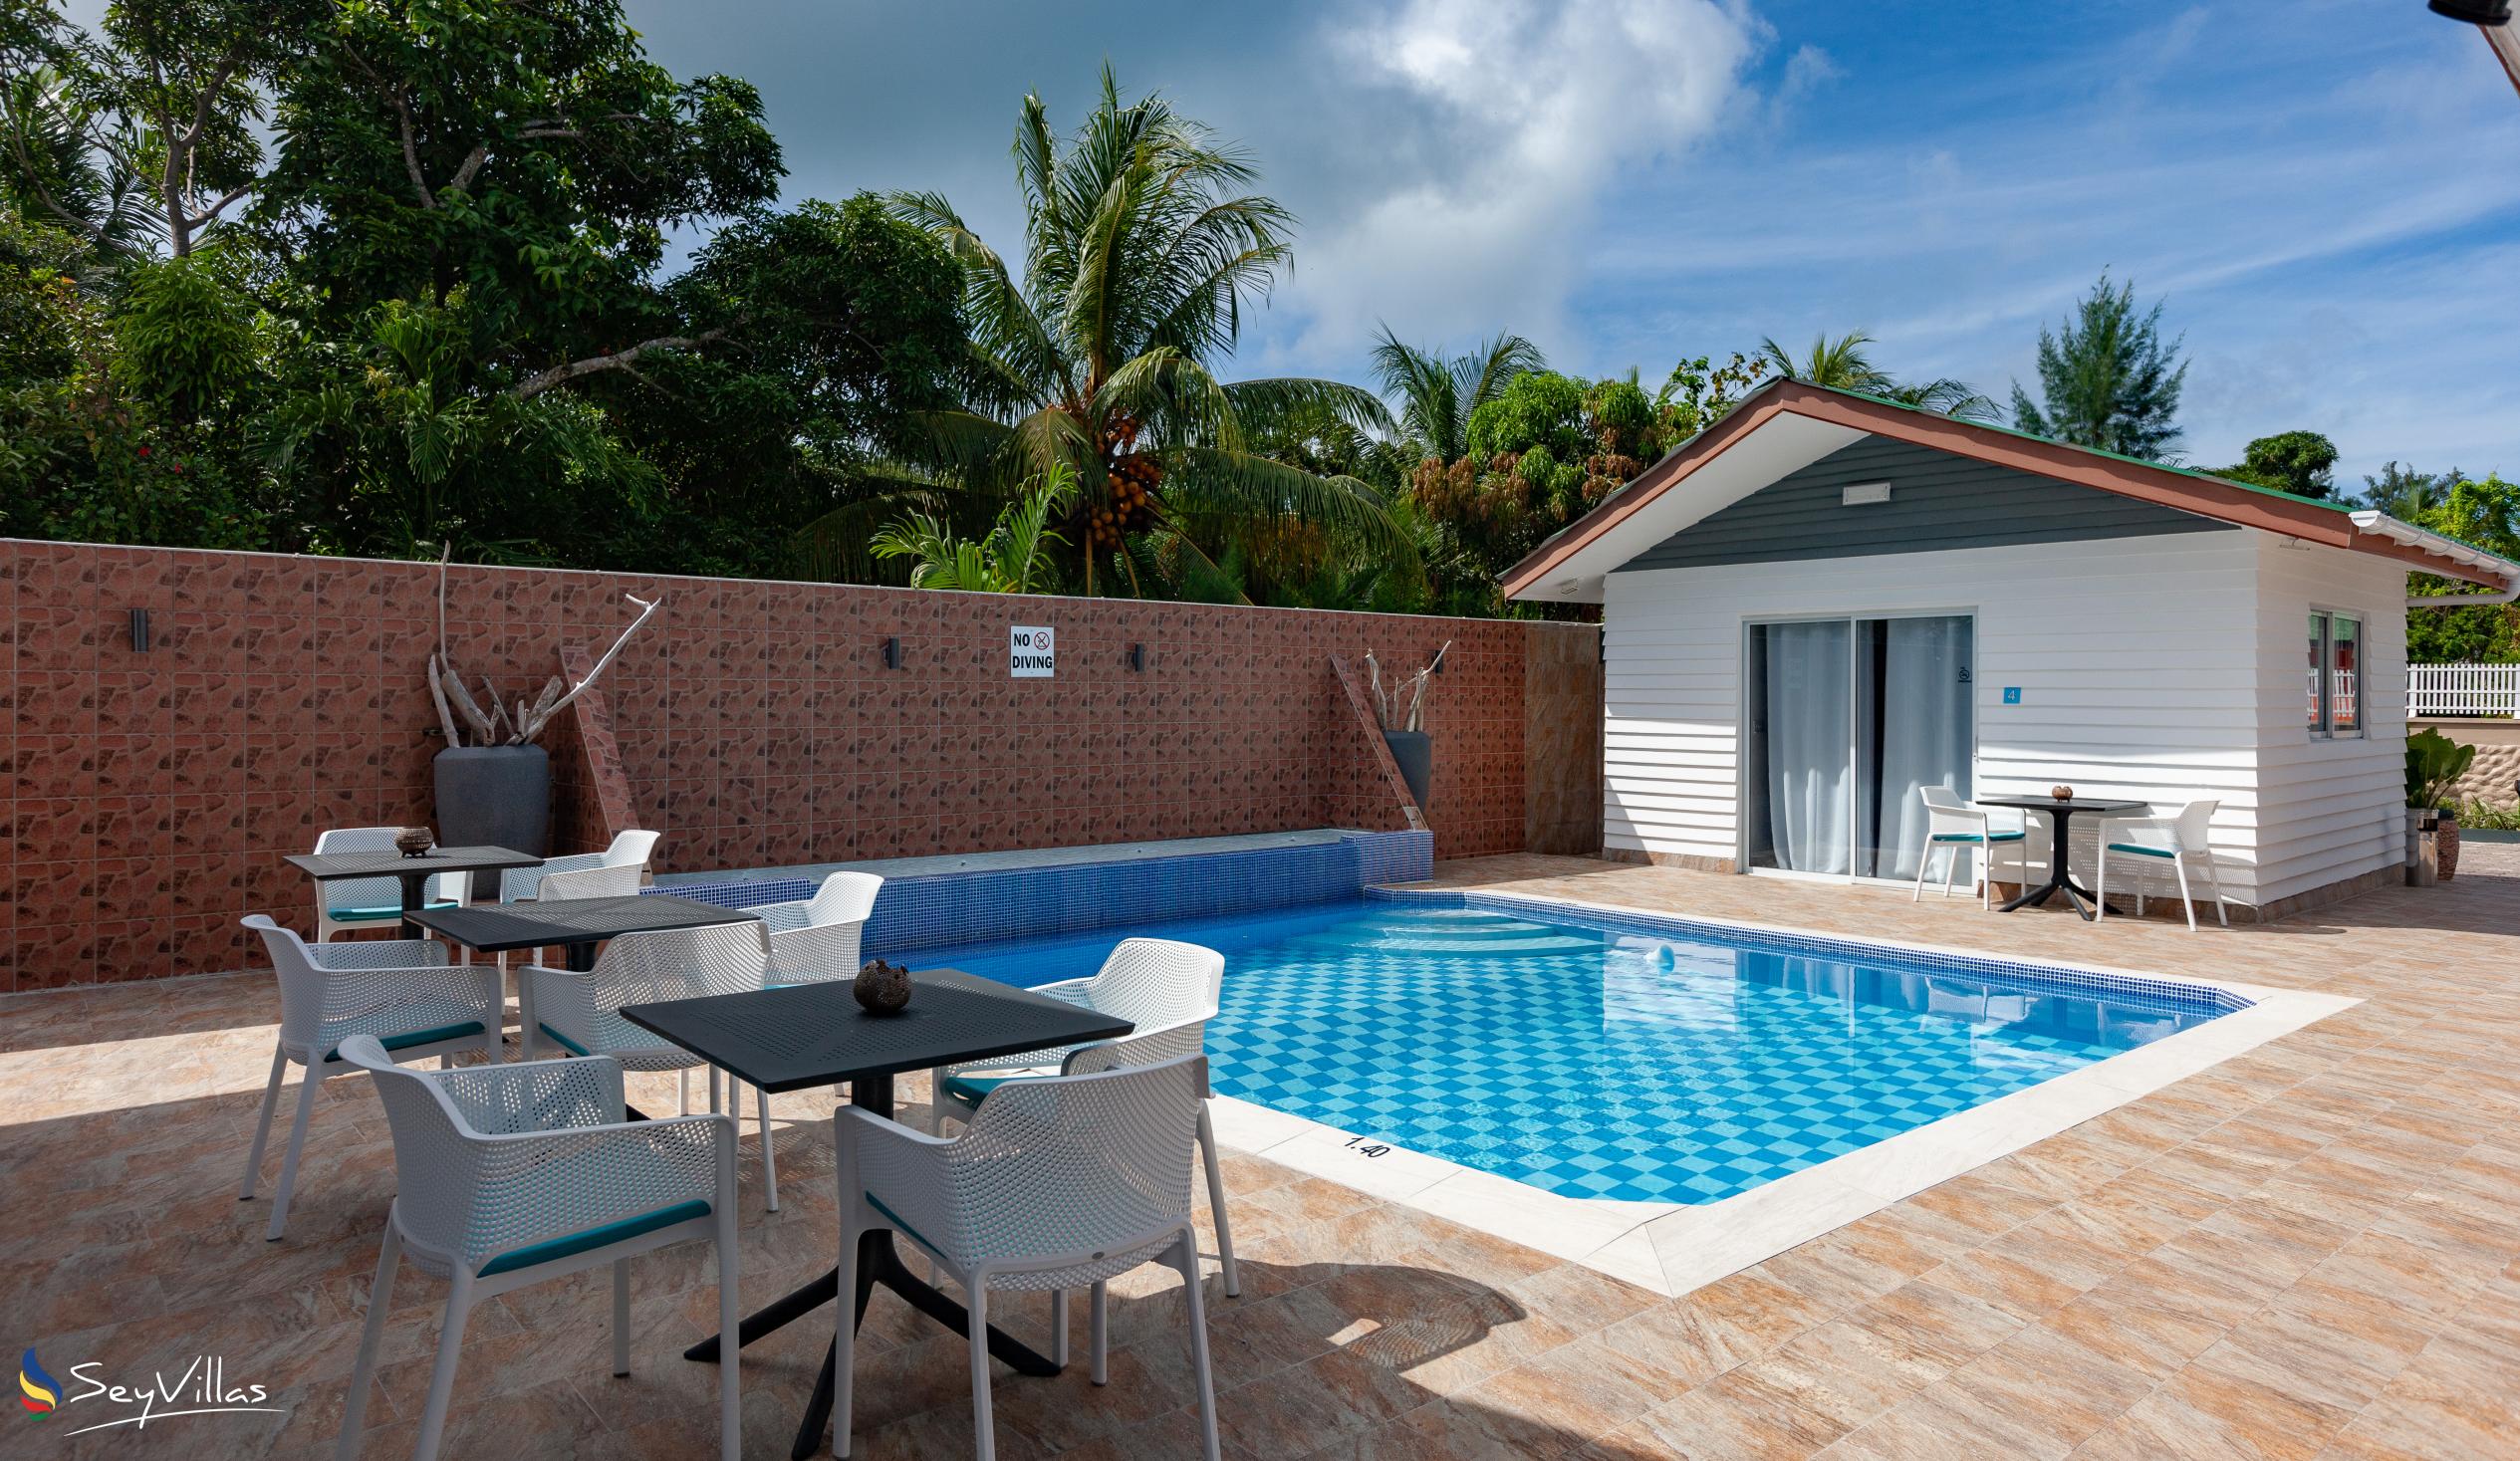 Foto 14: Hotel Plein Soleil - Aussenbereich - Praslin (Seychellen)